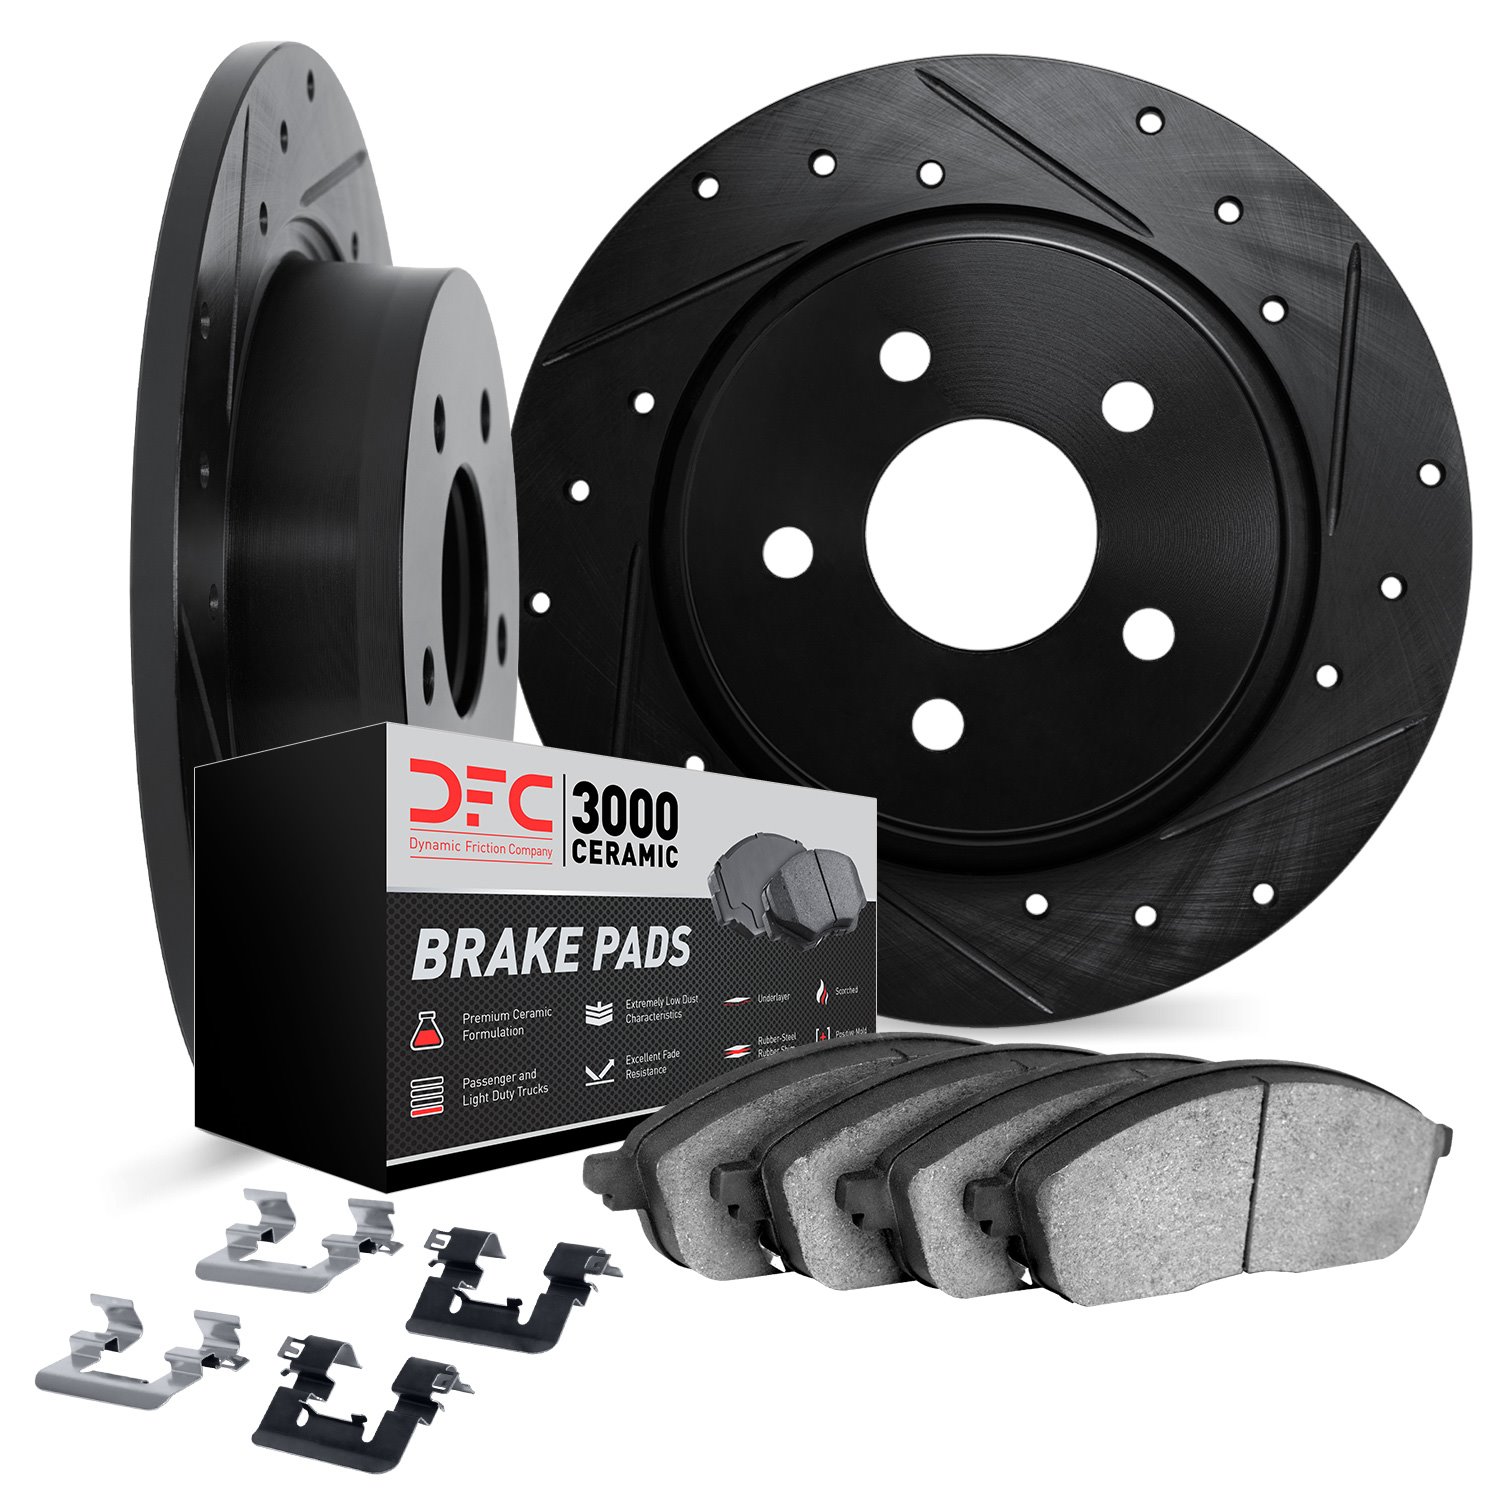 8312-76178 Drilled/Slotted Brake Rotors with 3000-Series Ceramic Brake Pads Kit & Hardware [Black], 2007-2012 Lexus/Toyota/Scion